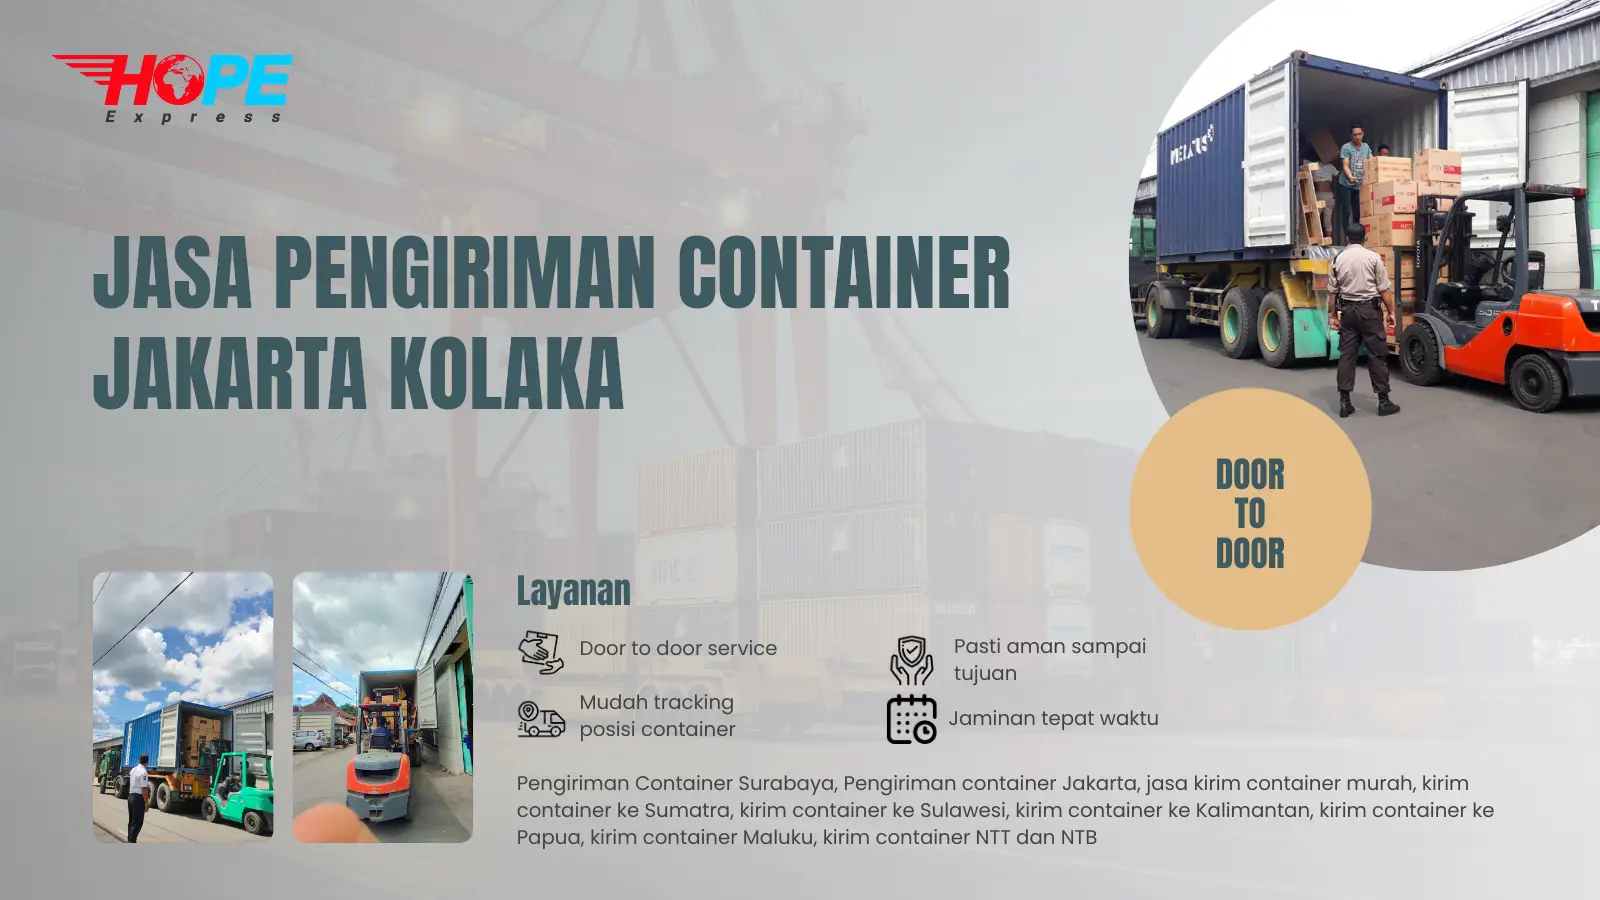 Jasa Pengiriman Container Jakarta Kolaka